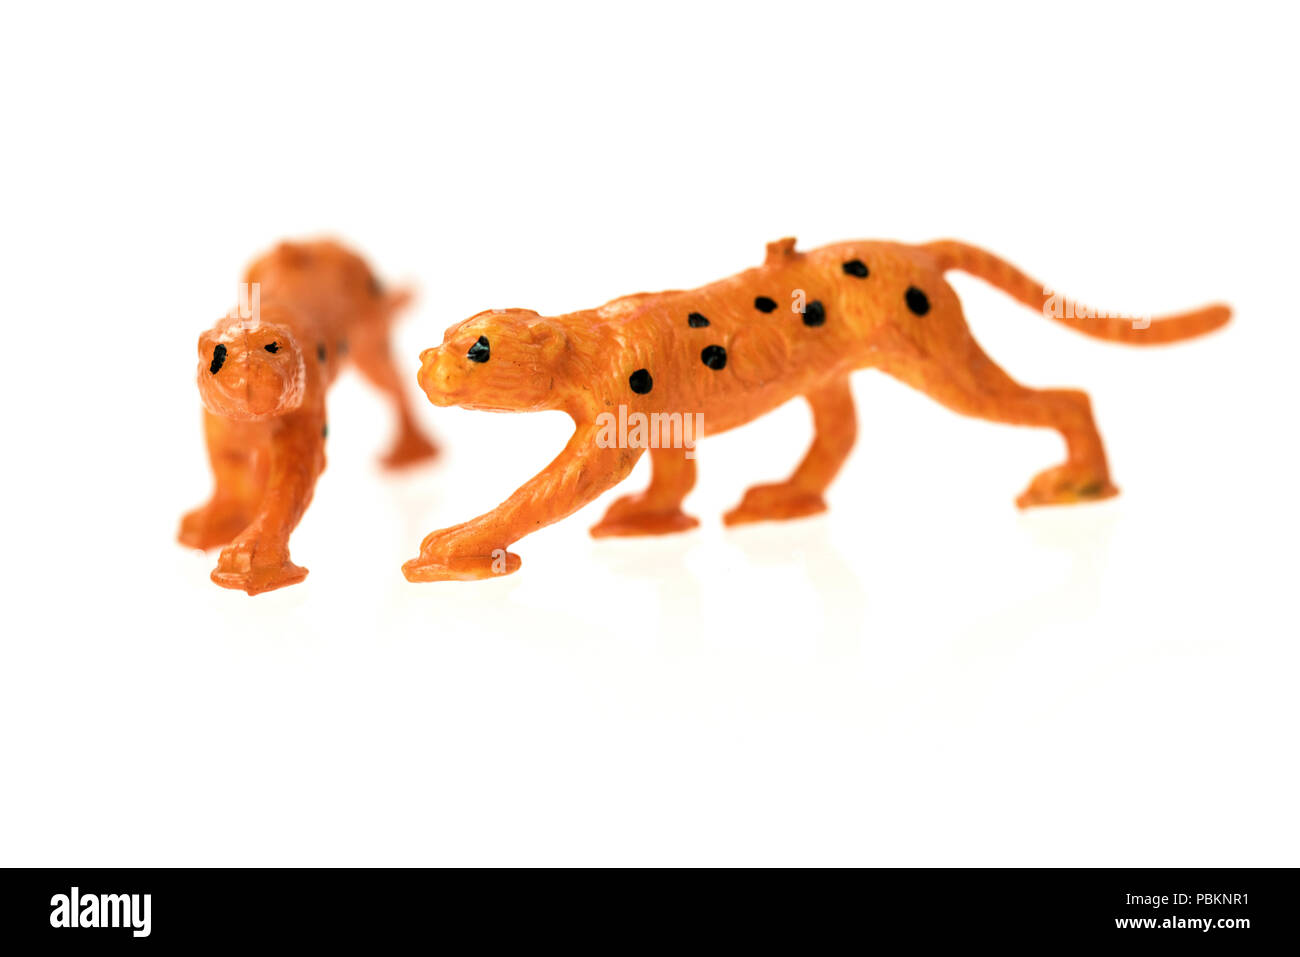 Spielzeug Geparden aus einem Jahrgang die Arche Noah Spiel eingestellt, auf weißem Hintergrund fotografiert. Stockfoto